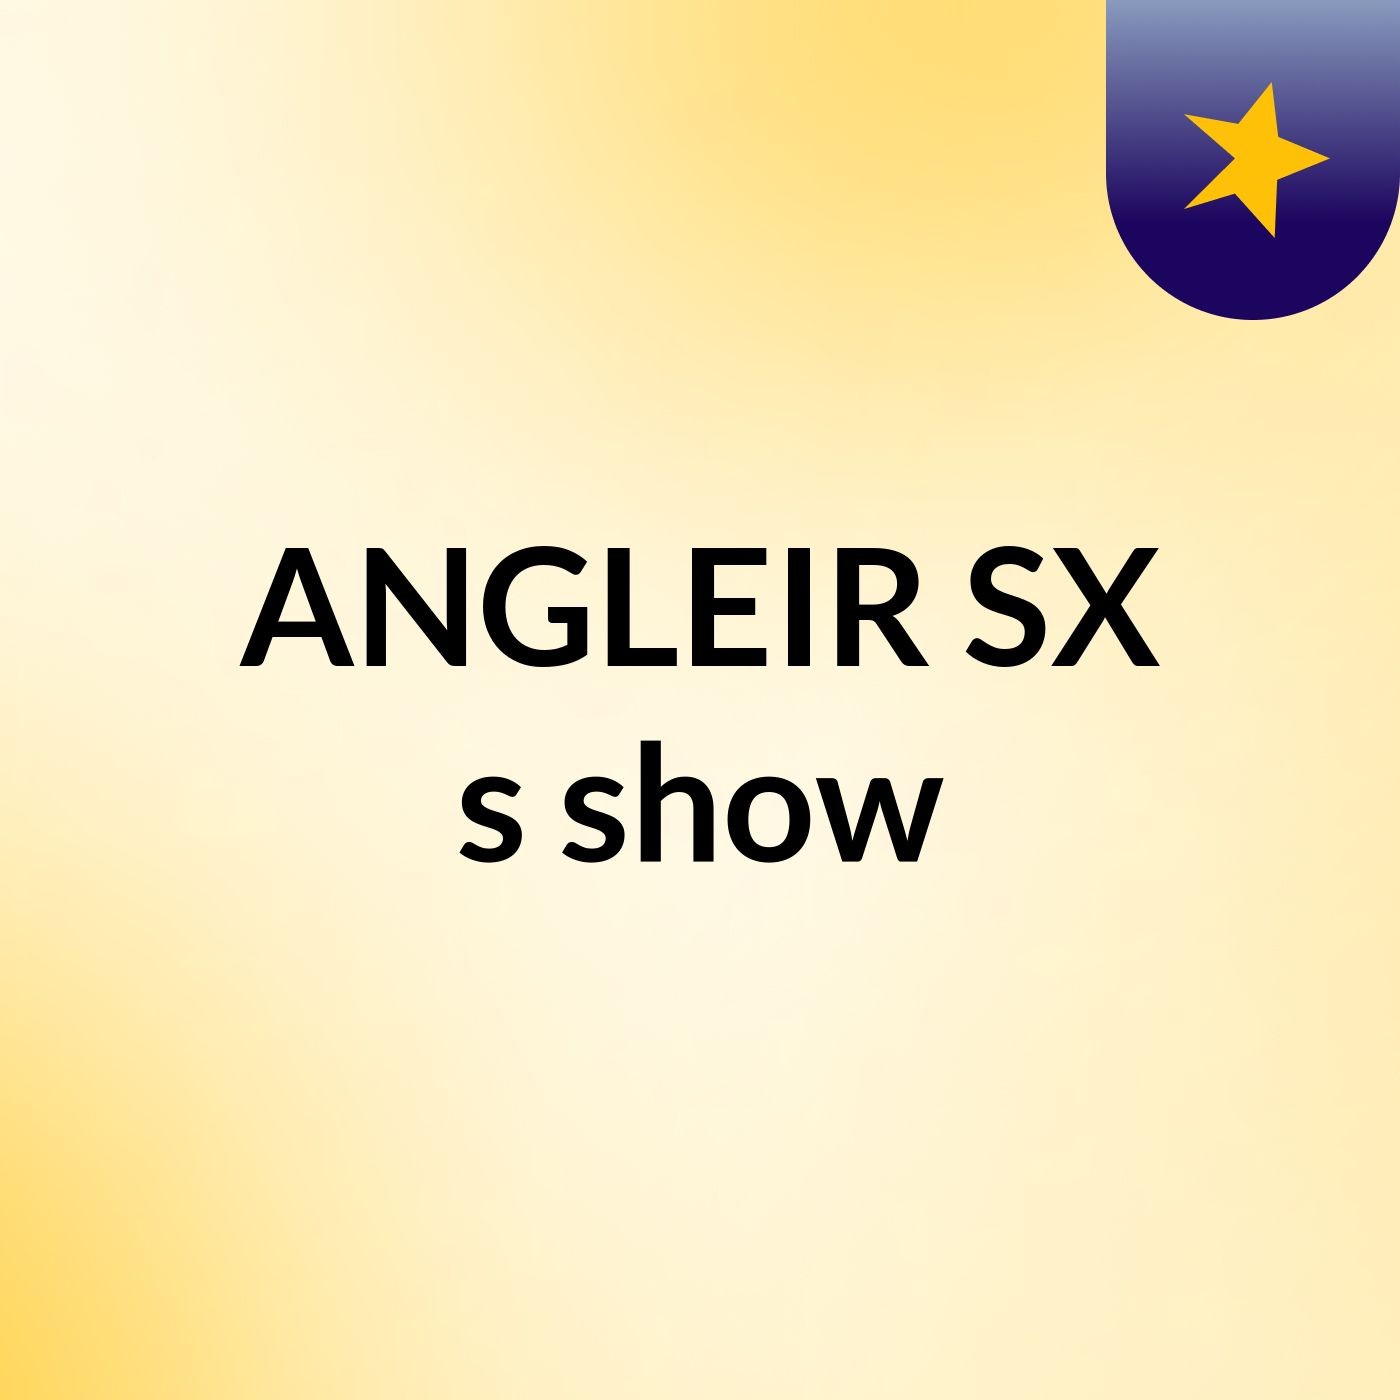 ANGLEIR SX's show